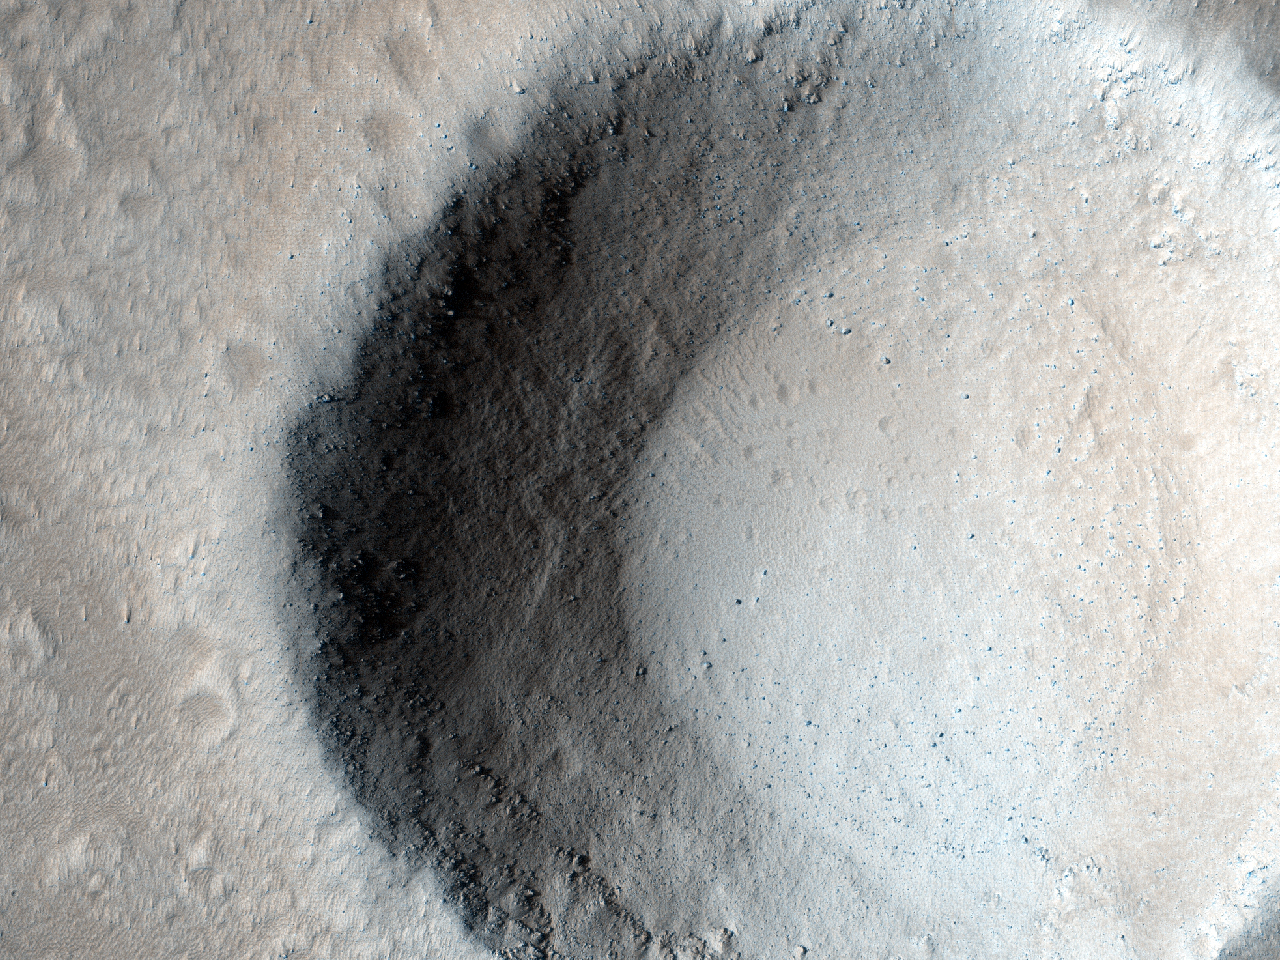 Mały krater i przepływy lawy na wygasłym wulkanie Olympus Mons